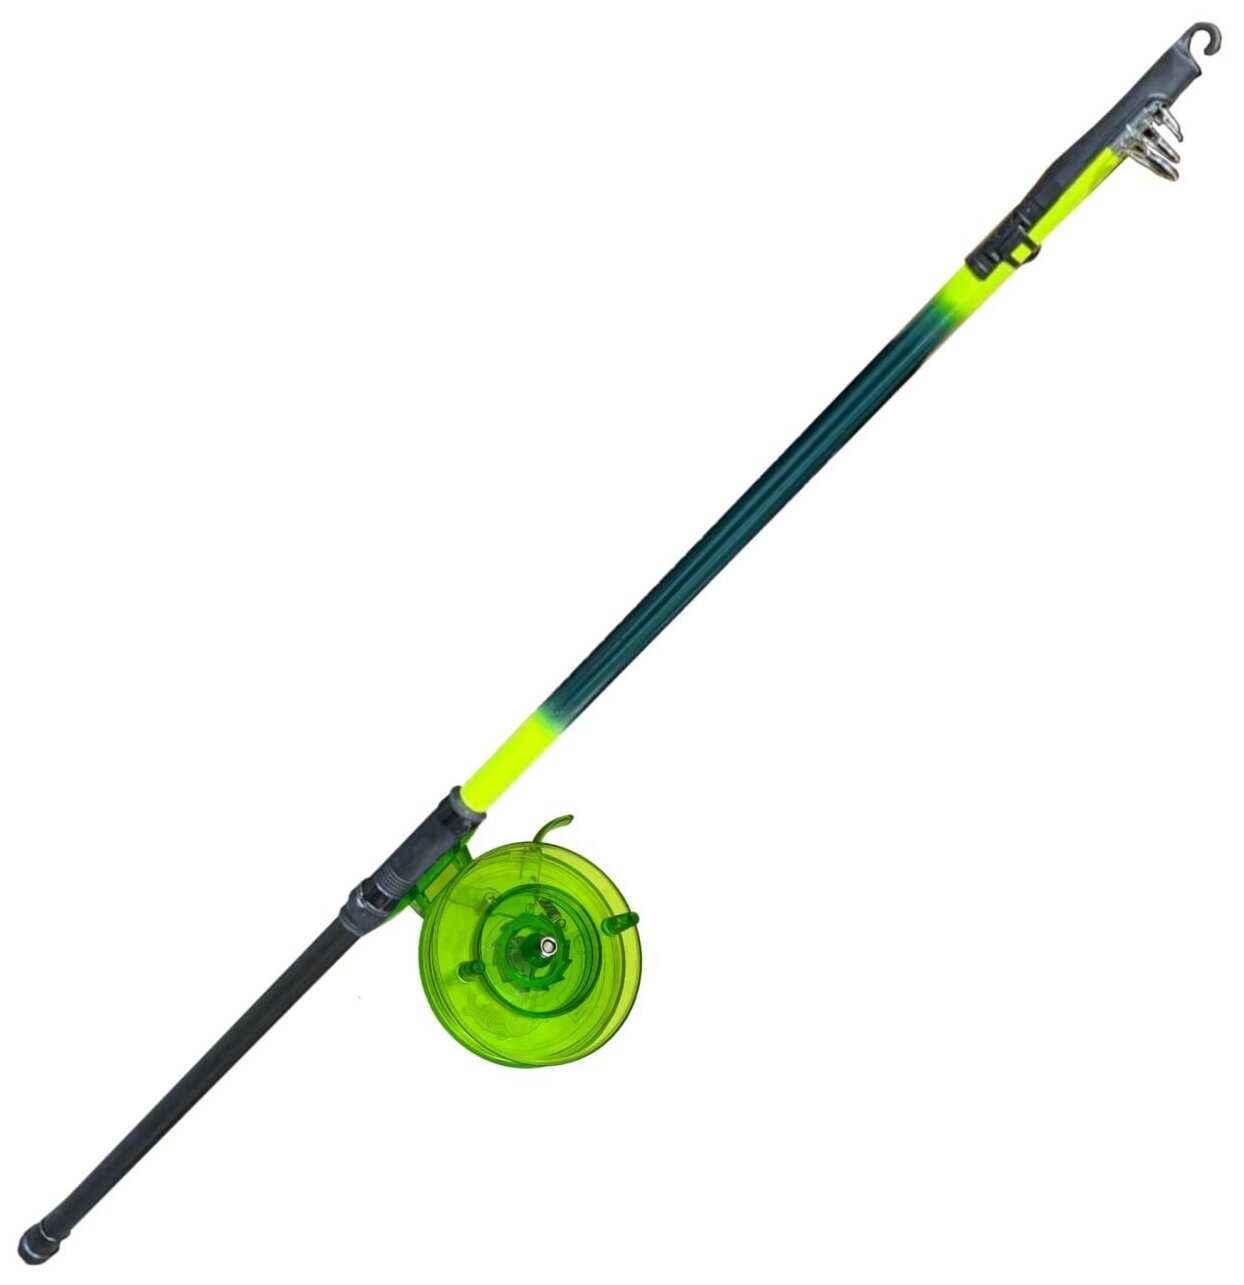 Удочка для ловли на поплавок с катушкой, телескопическая, зеленая, 3 м. Удилище с катушкой.